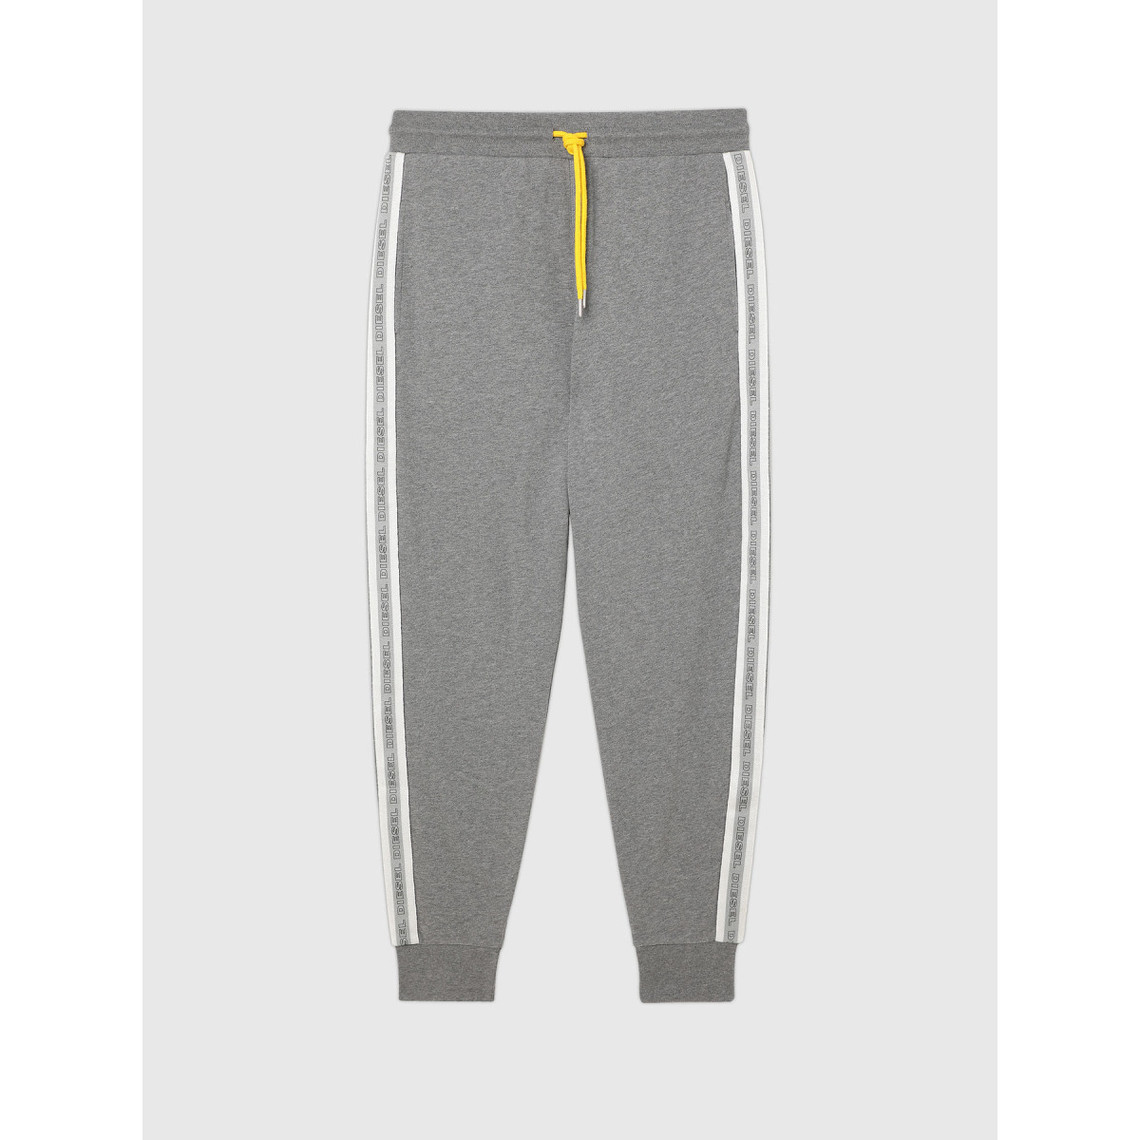 Pantalon jogging elastique - Gris en coton